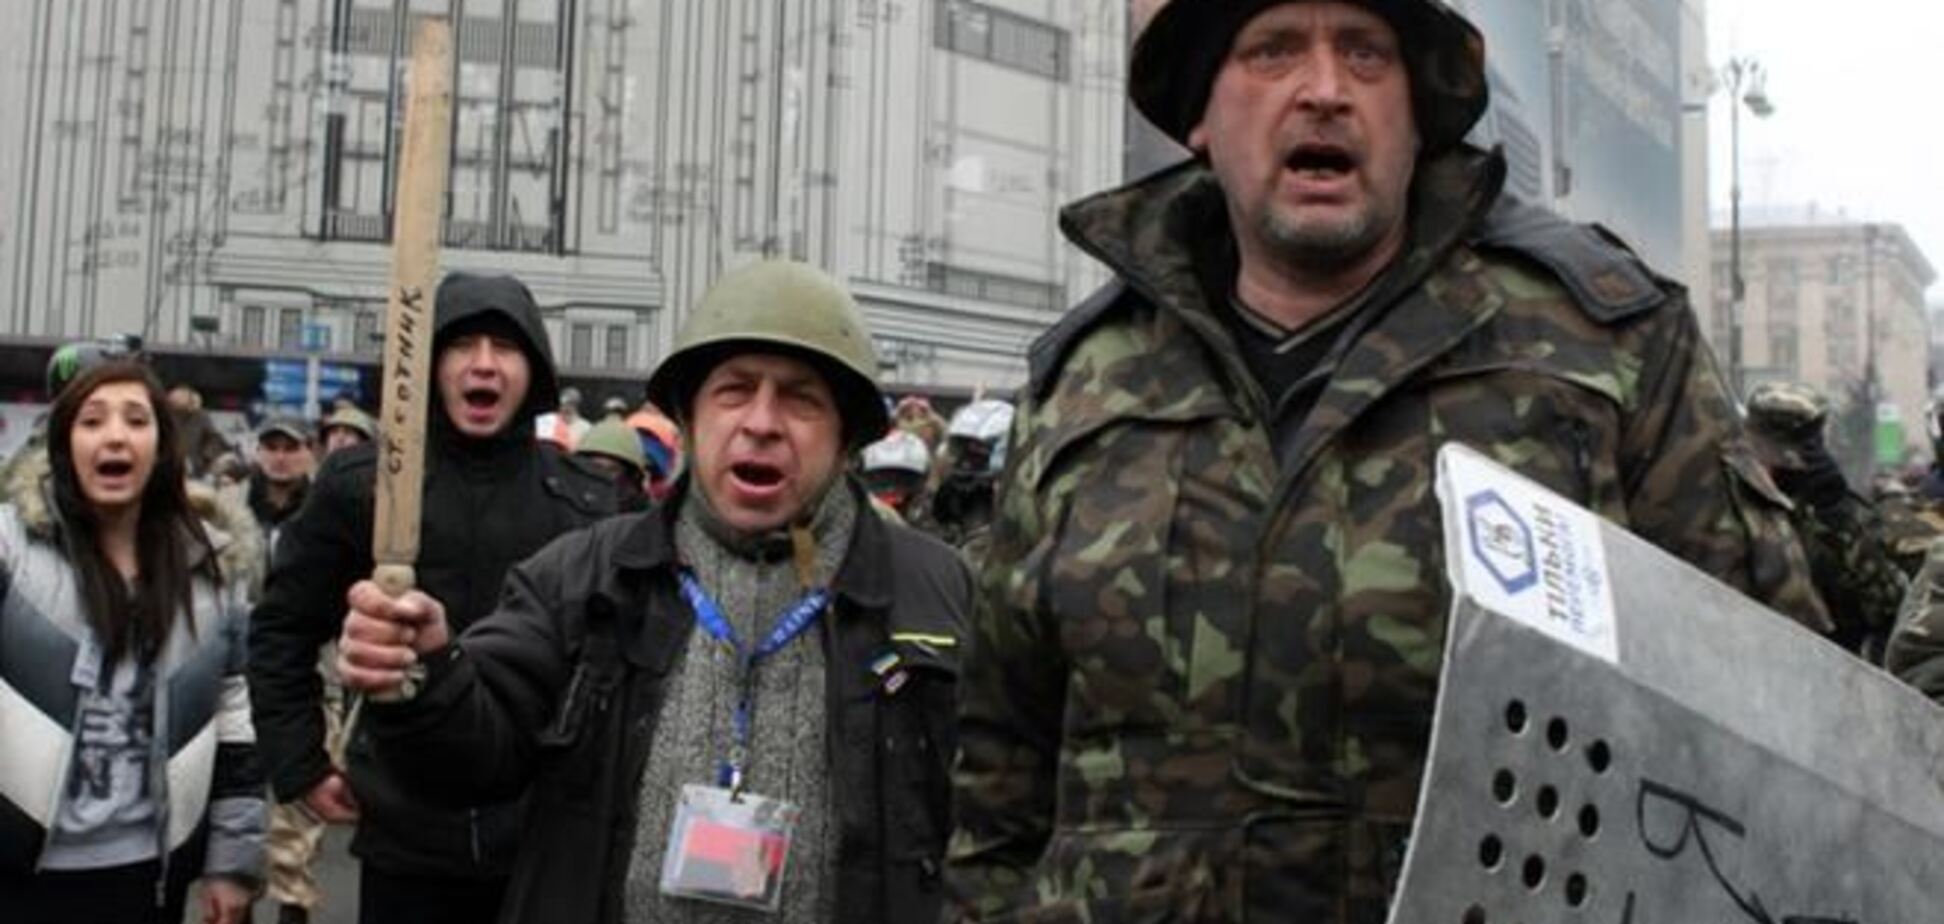 Под стражей остается 61 активист Евромайдана - МВД